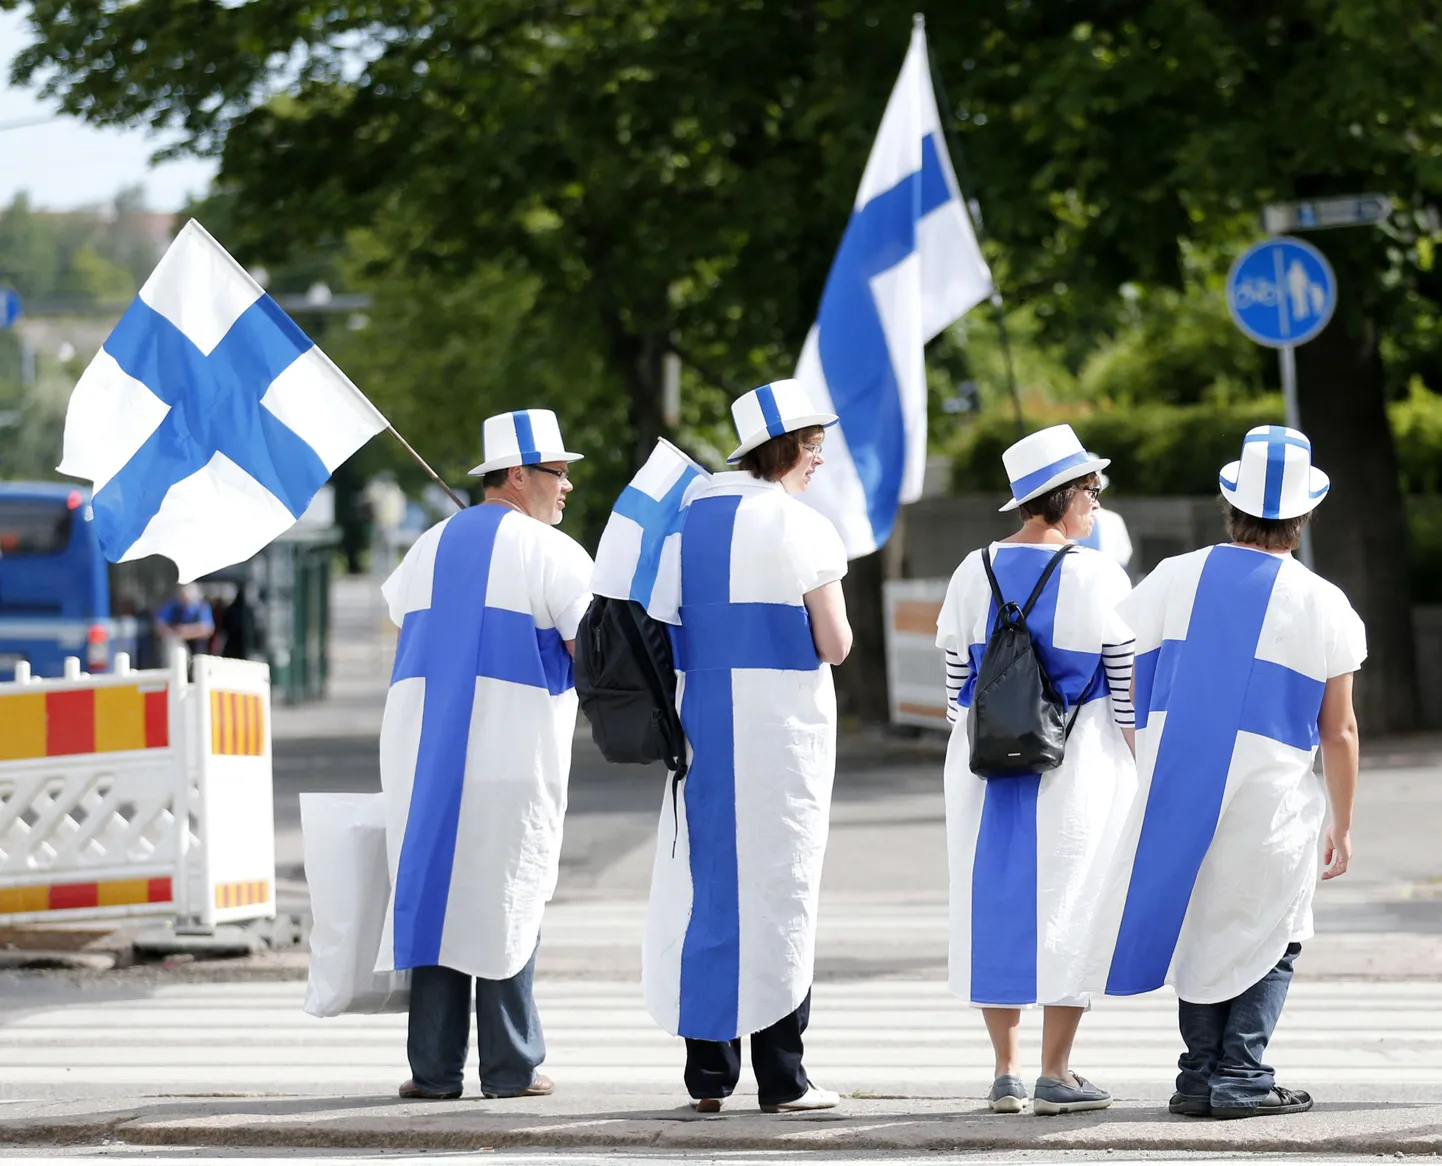 Soome lipud.